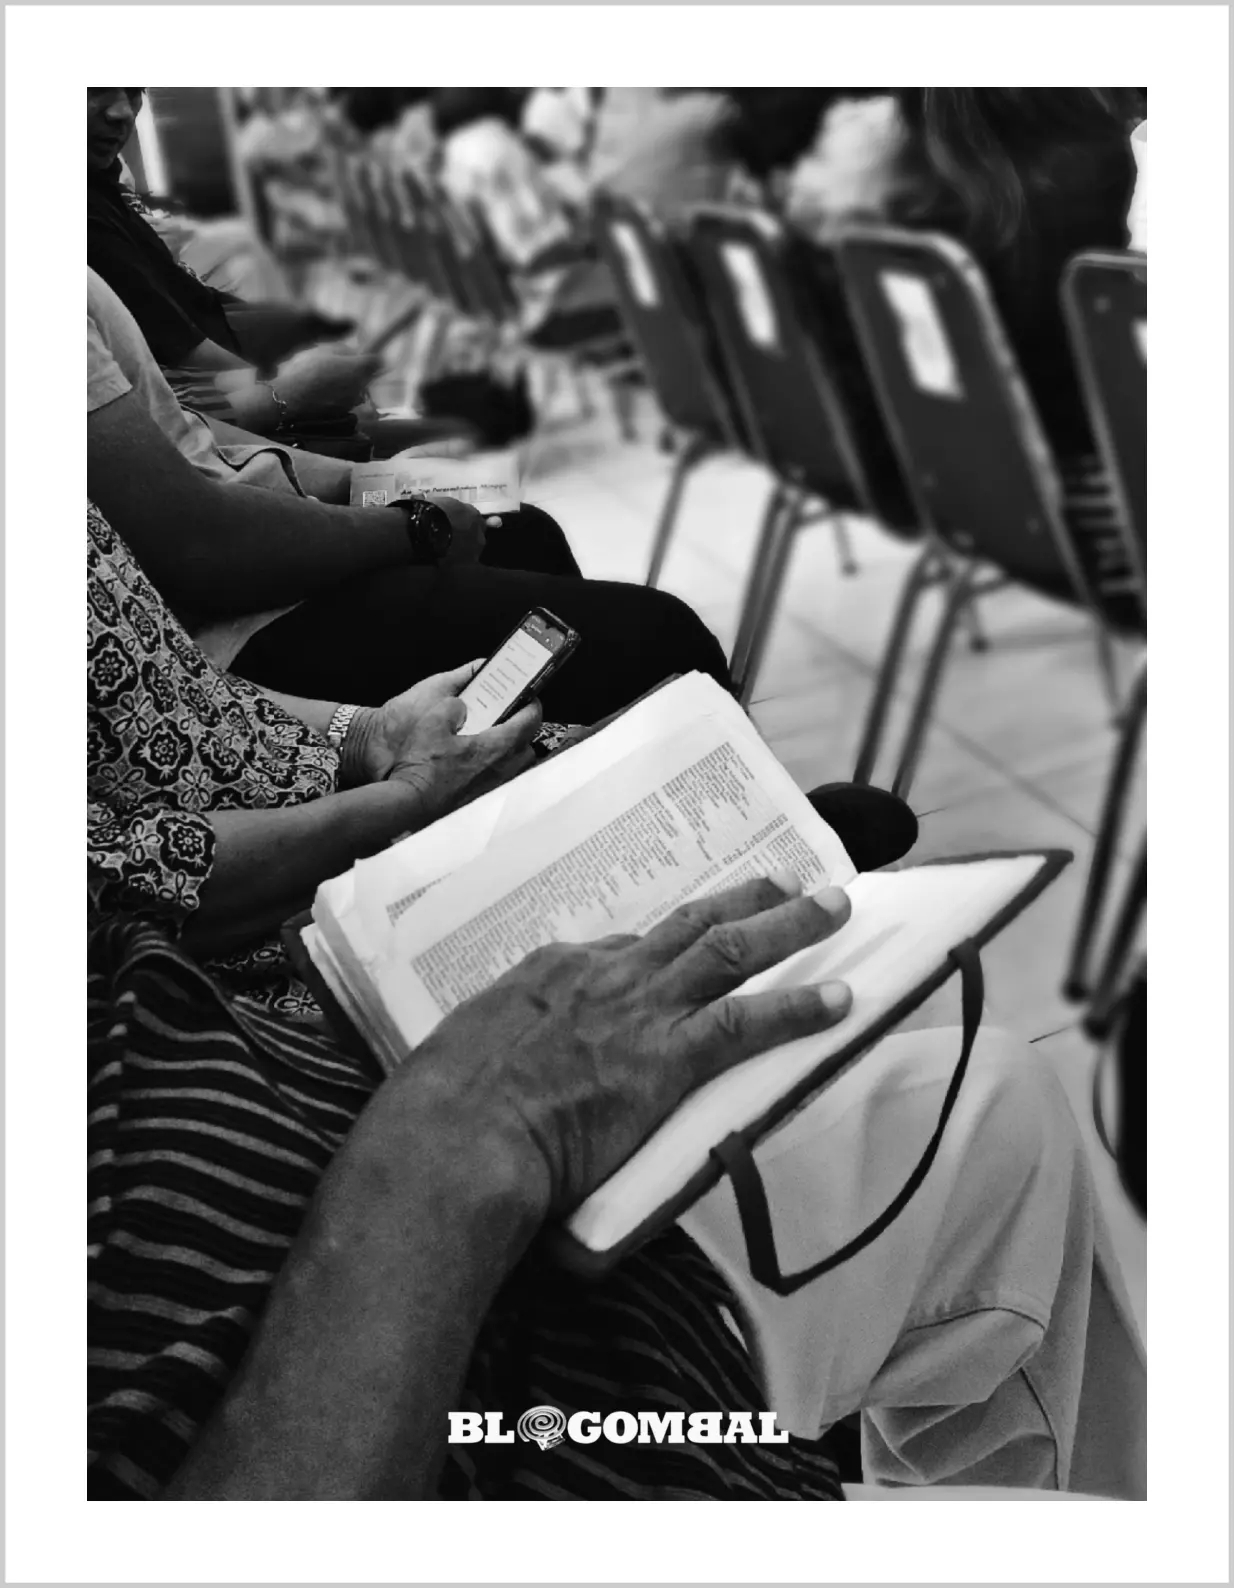 Alkitab versi cetak dan versi digital dalam kebaktian di GKJ Pondokgede 